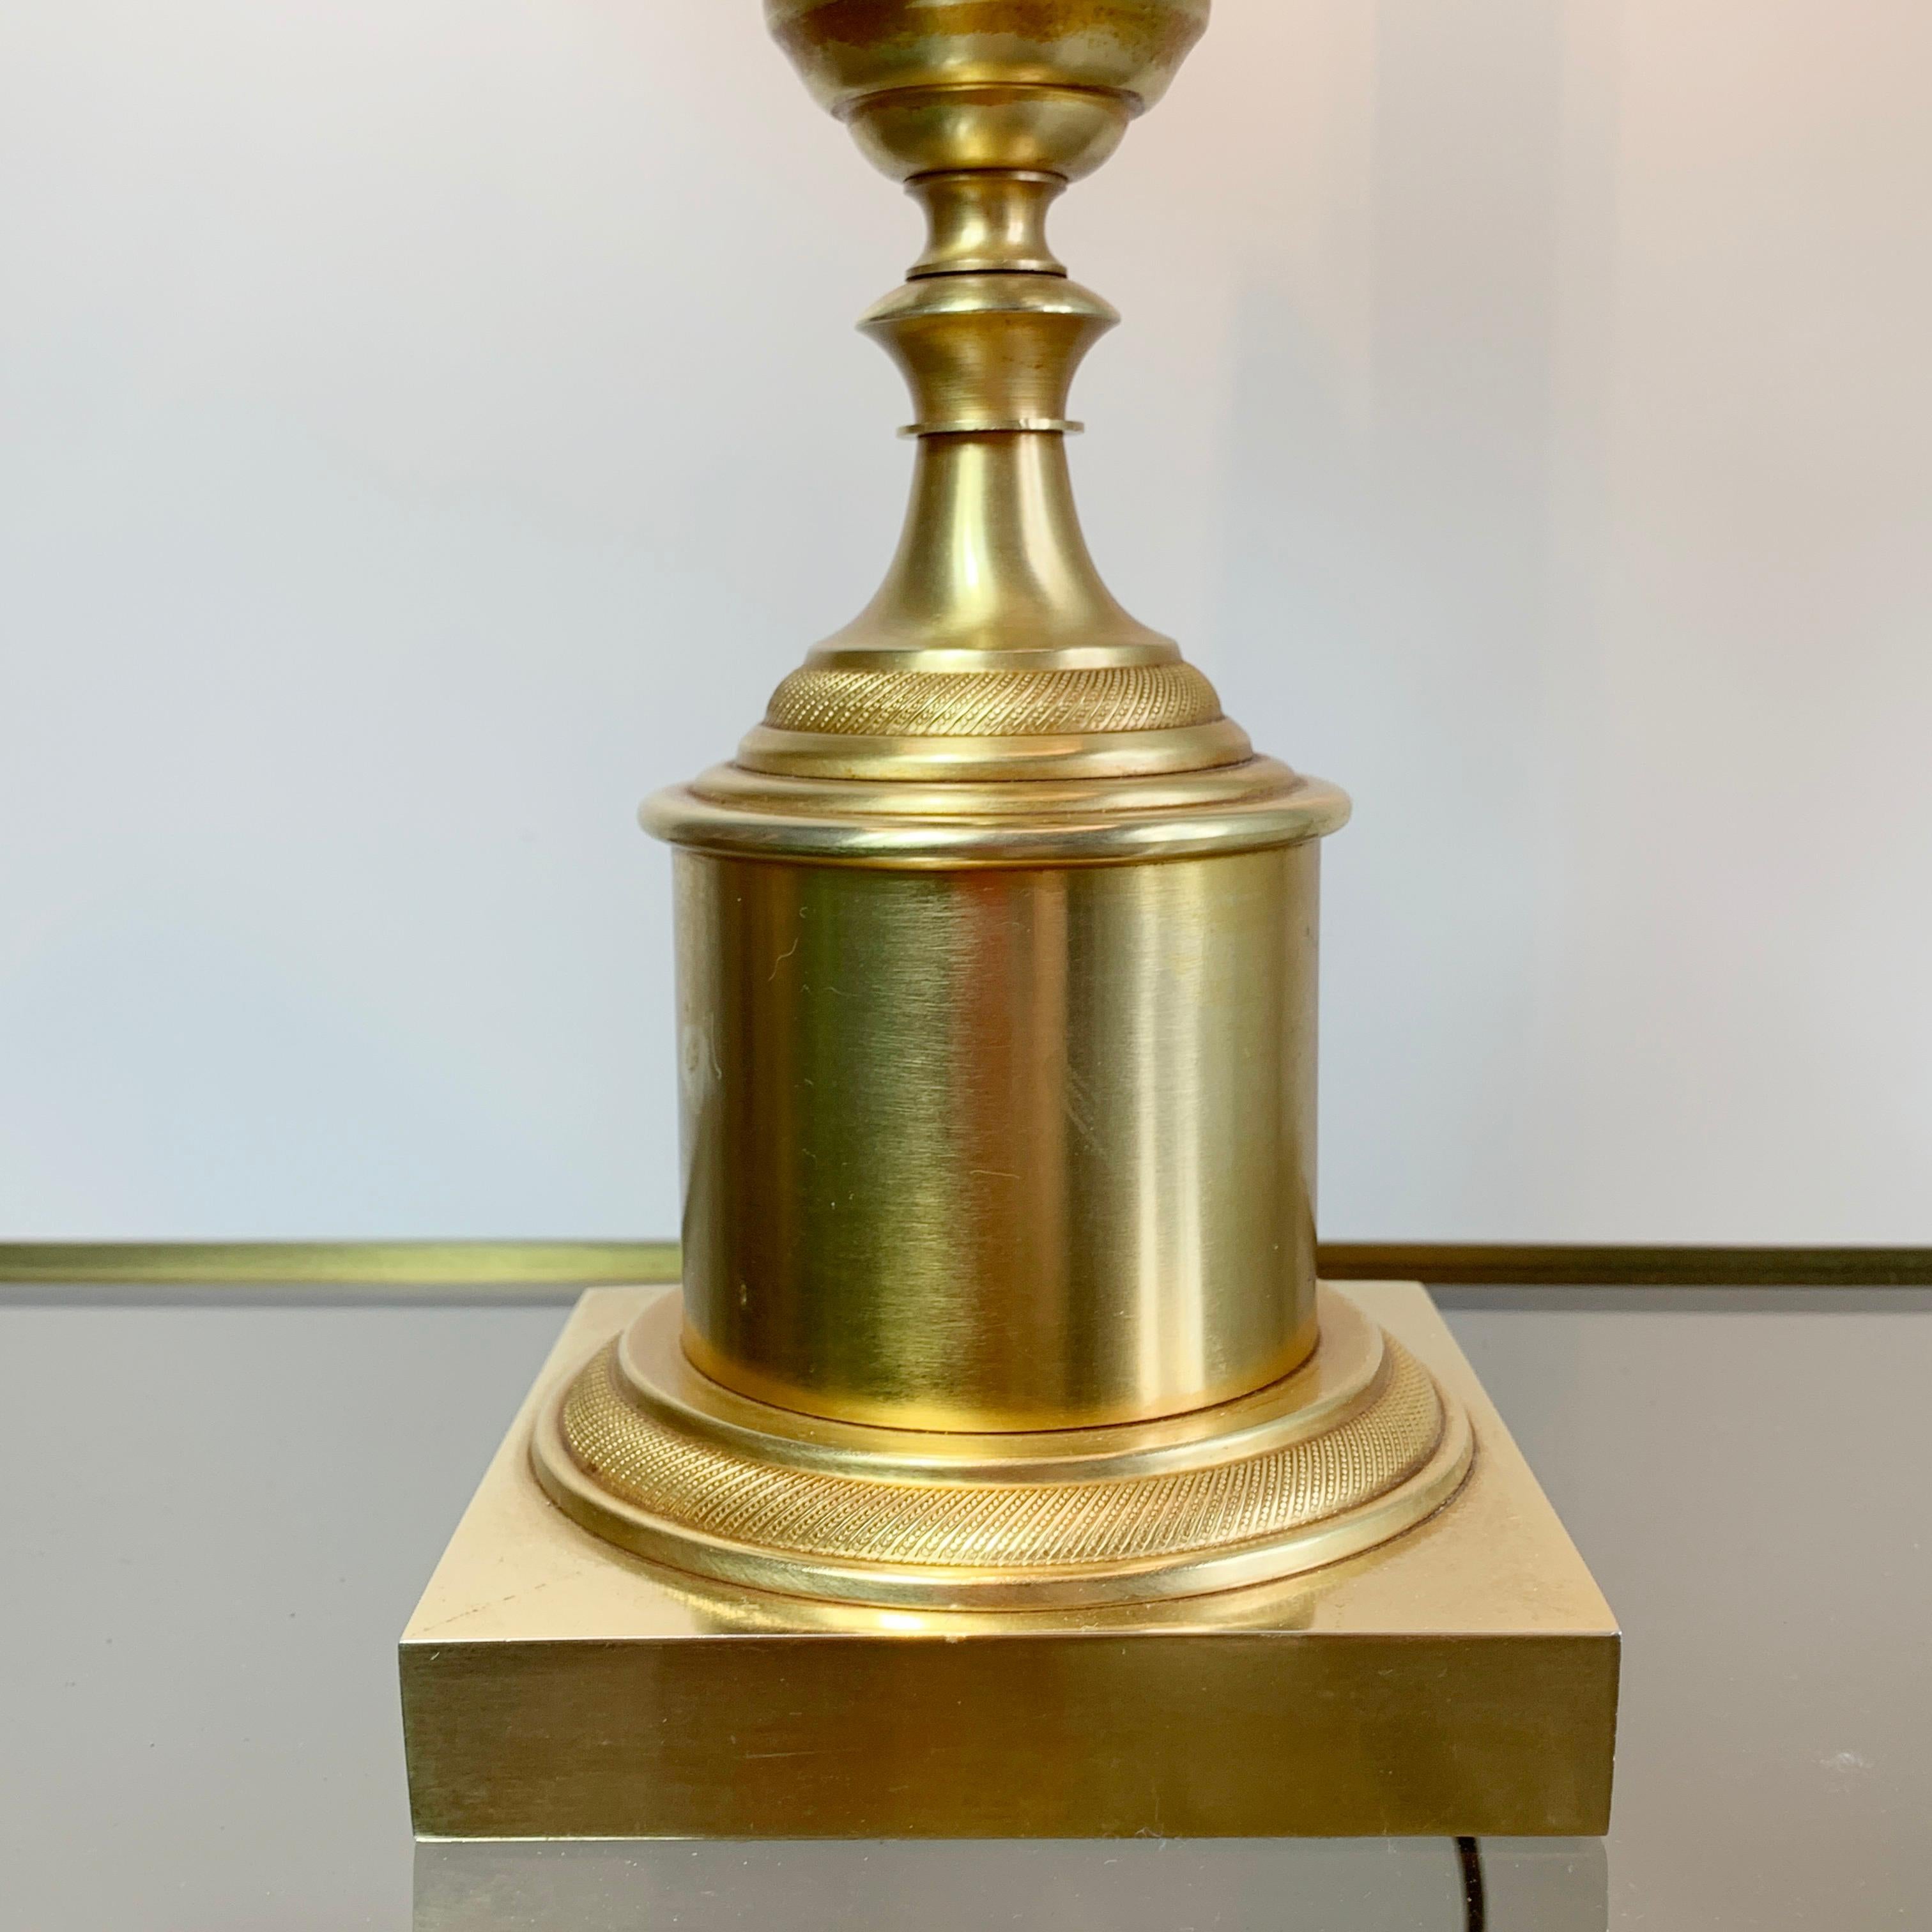 Außergewöhnliche Lampe von S. A. Boulanger. Goldene Wedel ragen aus dem großen zentralen 